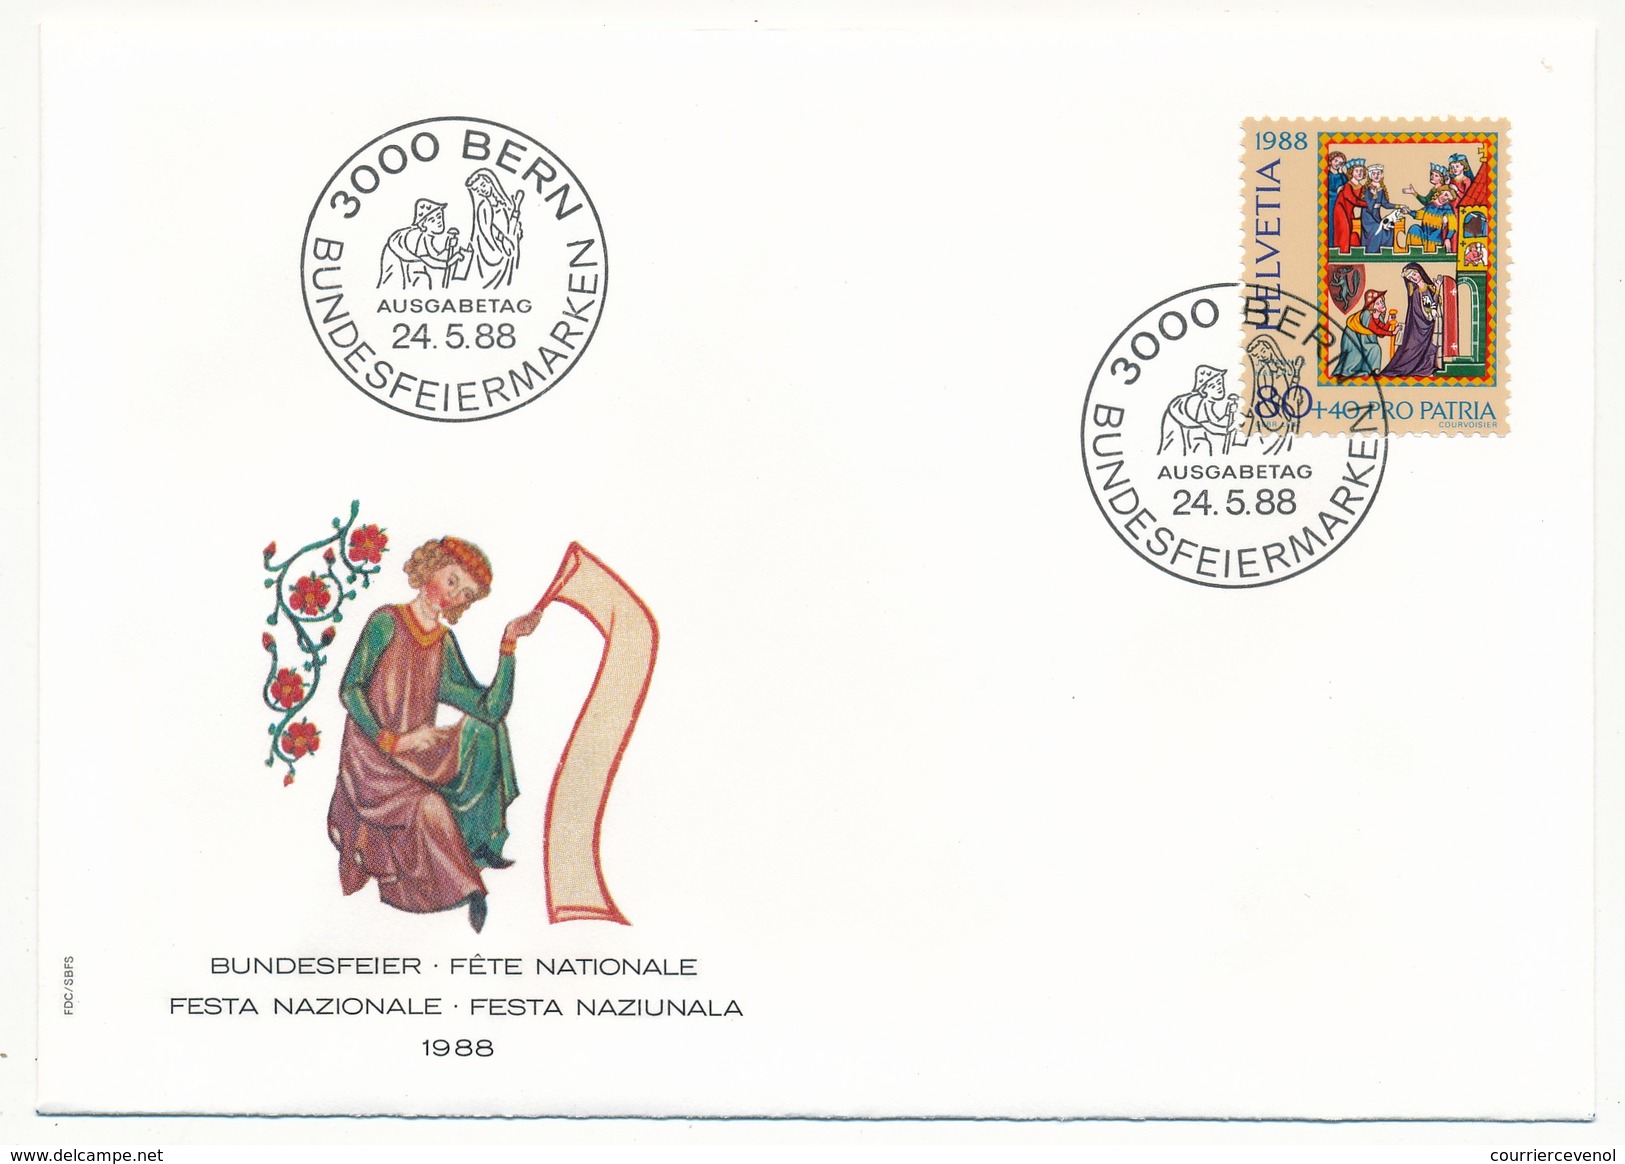 SUISSE - 5 Enveloppes FDC - Fête Nationale 1988 (Pro Patria) - BERN 24/5/1988 - Servizio